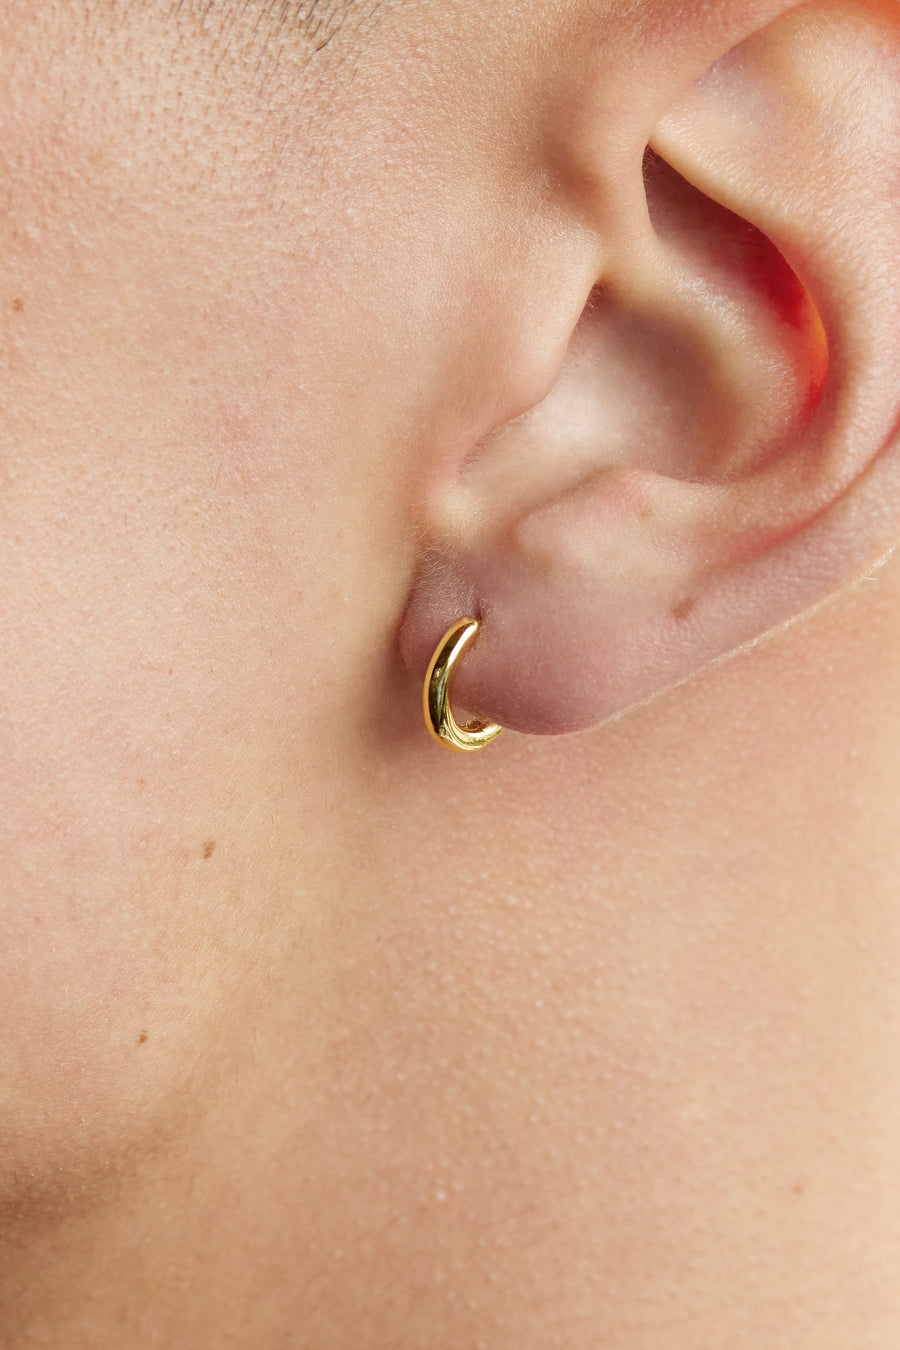 15mm Stainless Steel Hoop Earrings - 14K Gold